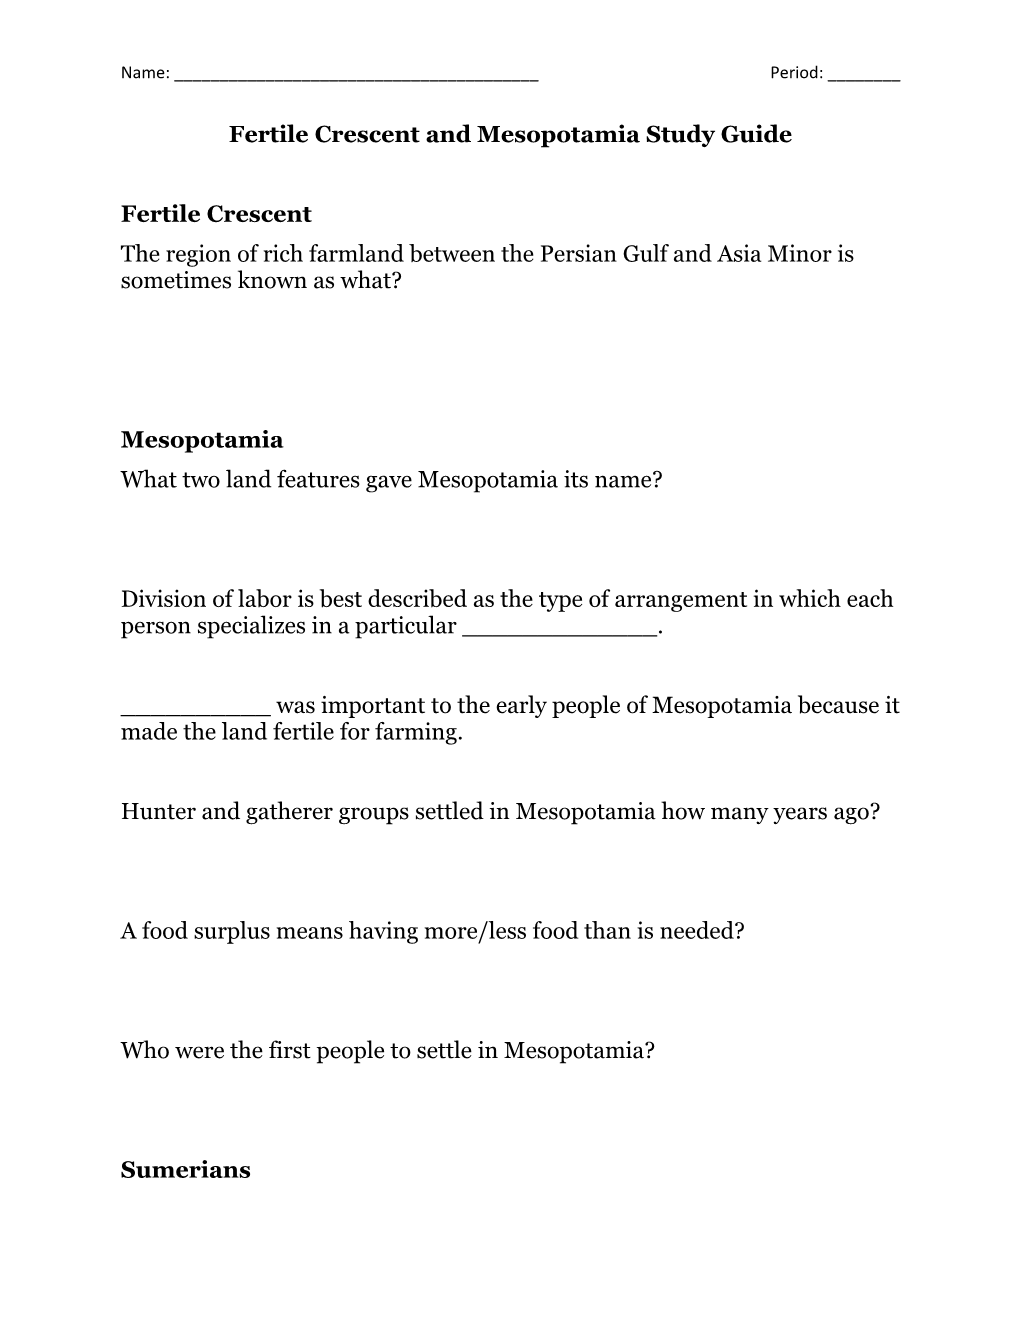 Fertile Crescent and Mesopotamia Study Guide